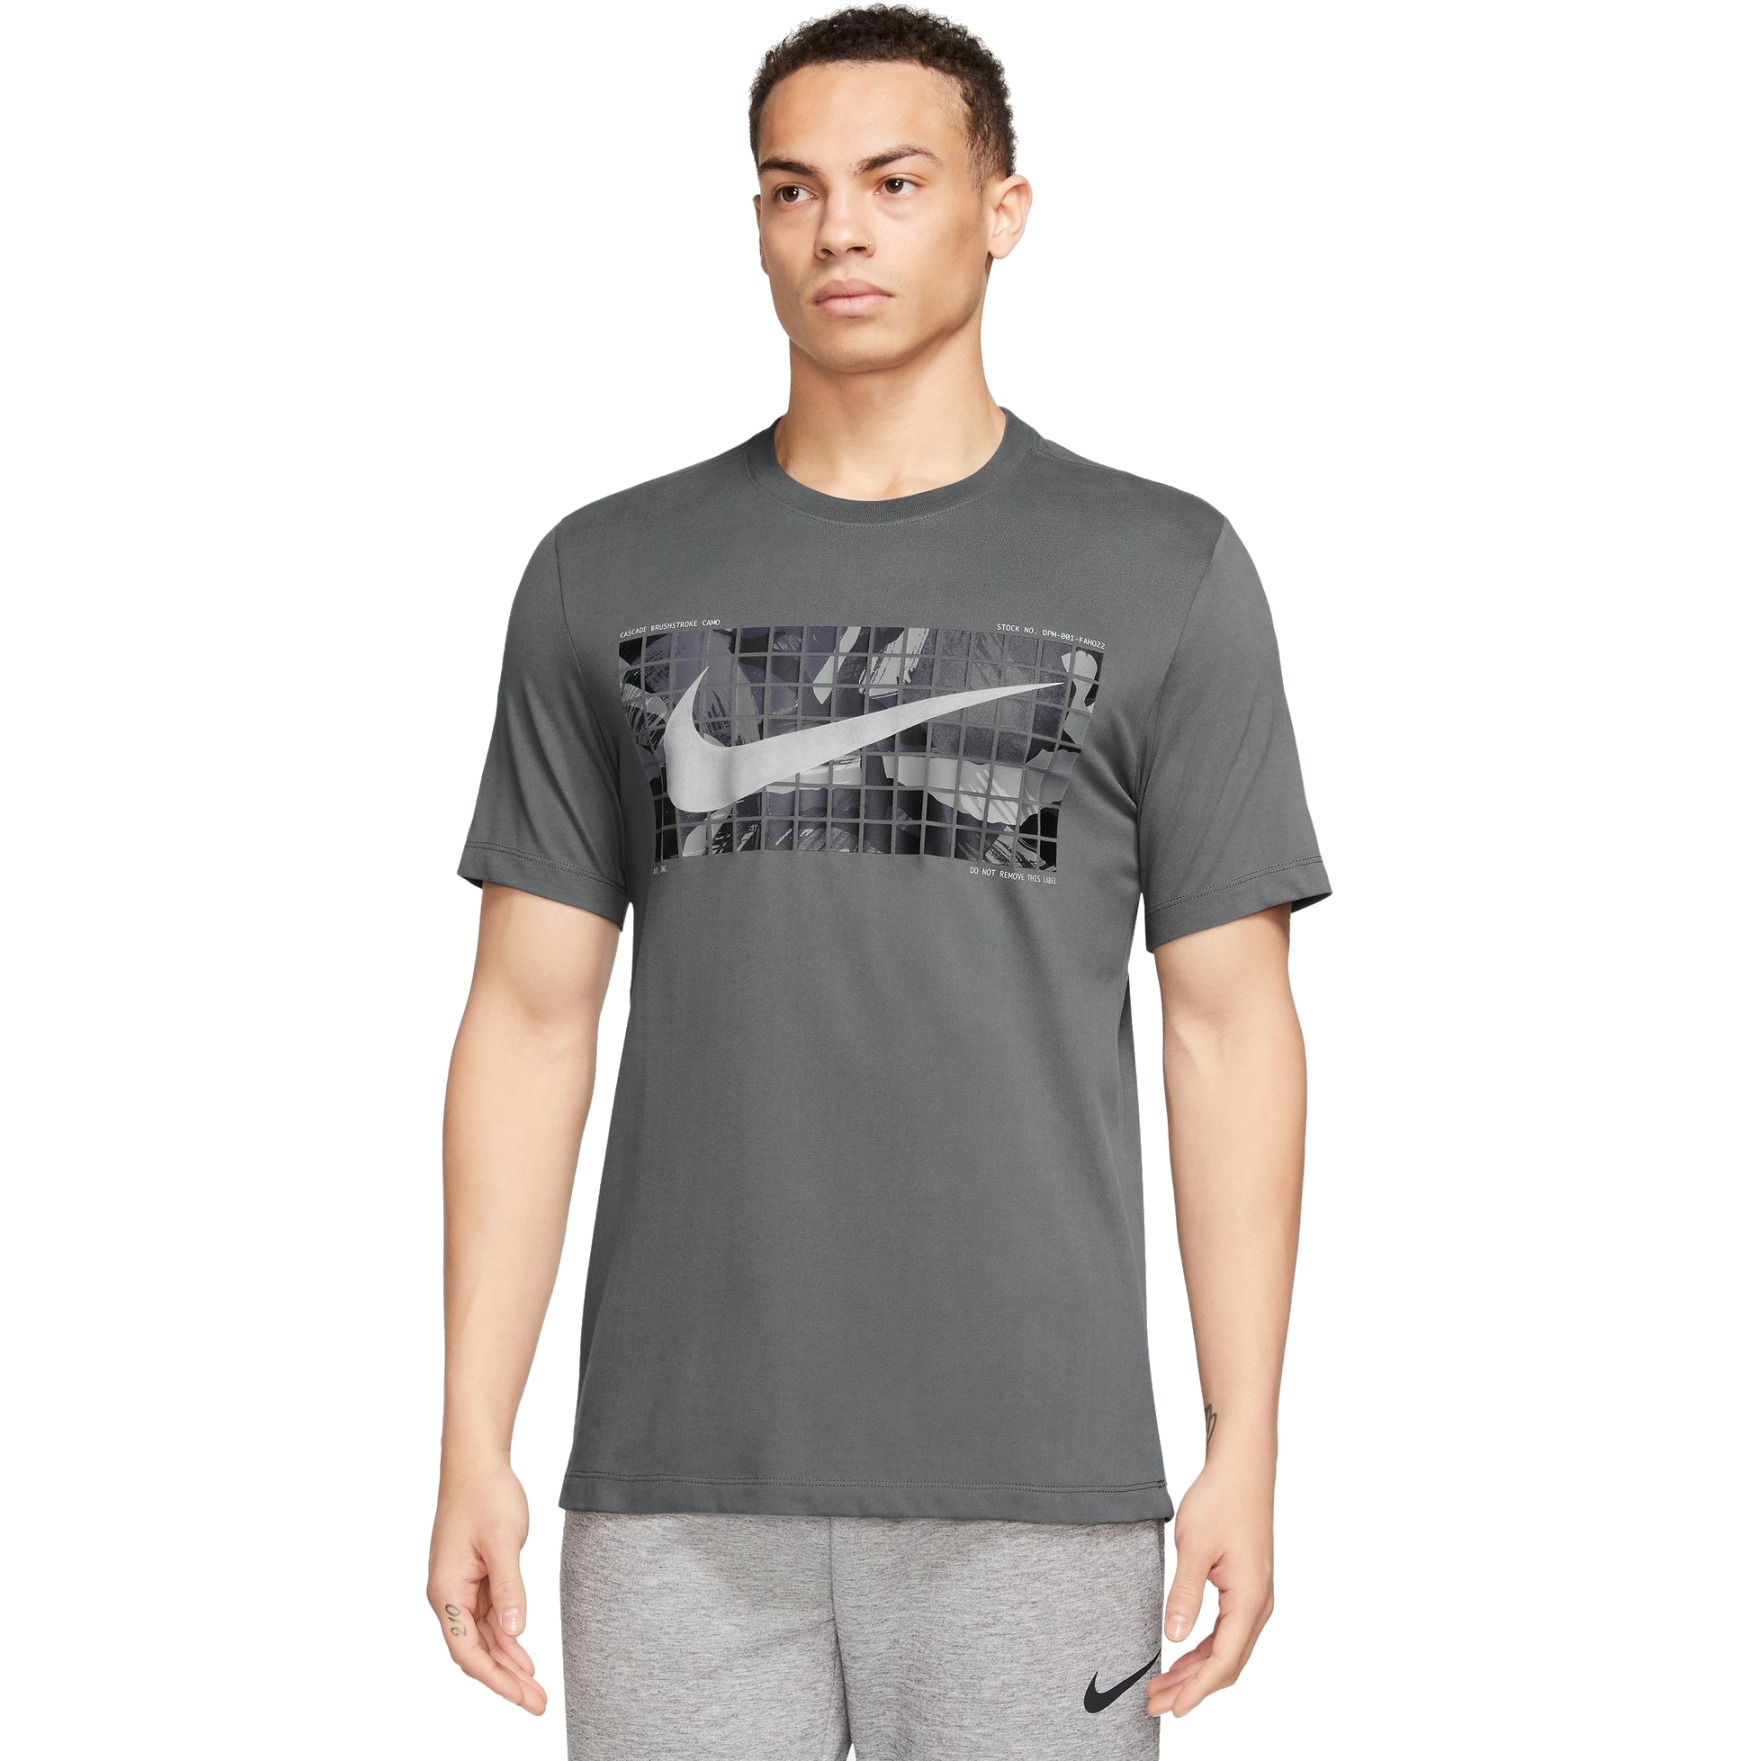 Produktbild von Nike Dri-FIT Camo T-Shirt Herren - iron grey FJ2446-068